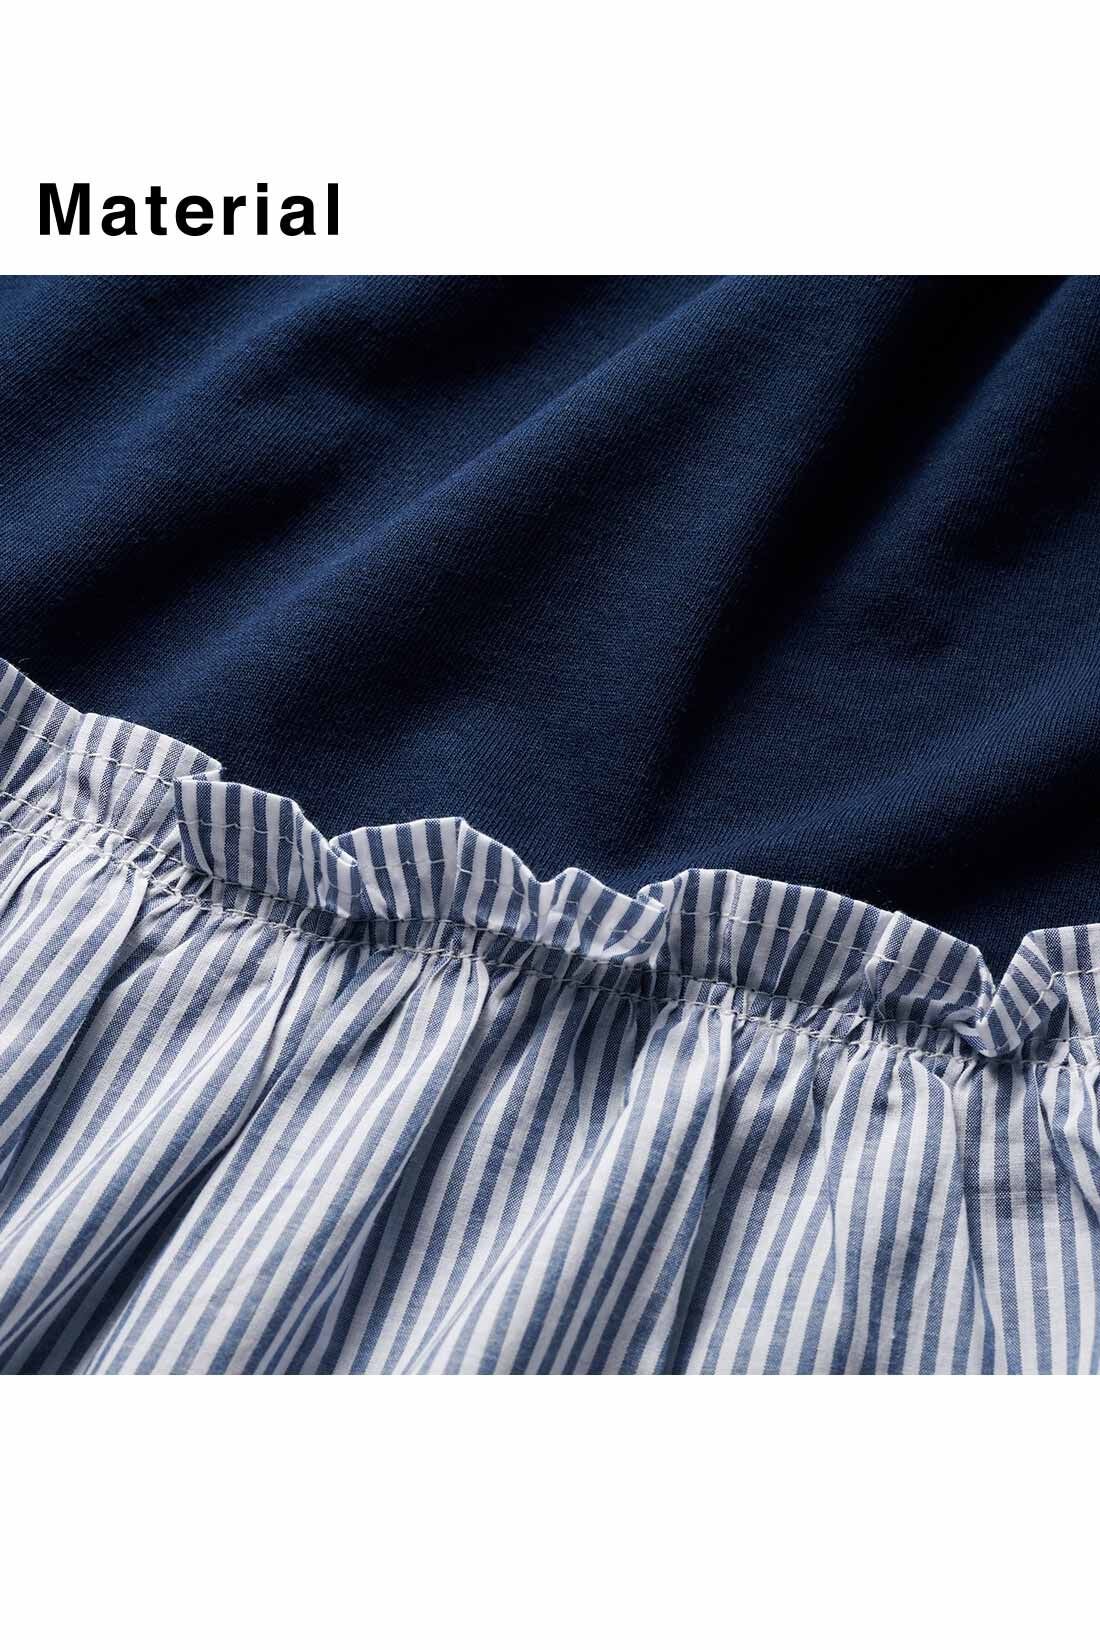 IEDIT|IEDIT[イディット]　異素材ストライプ遣いのボリューム袖トップス〈ブラック〉|カットソー×布はくの組み合わせでメリハリを。素材はともに綿100％。※お届けするカラーとは異なります。